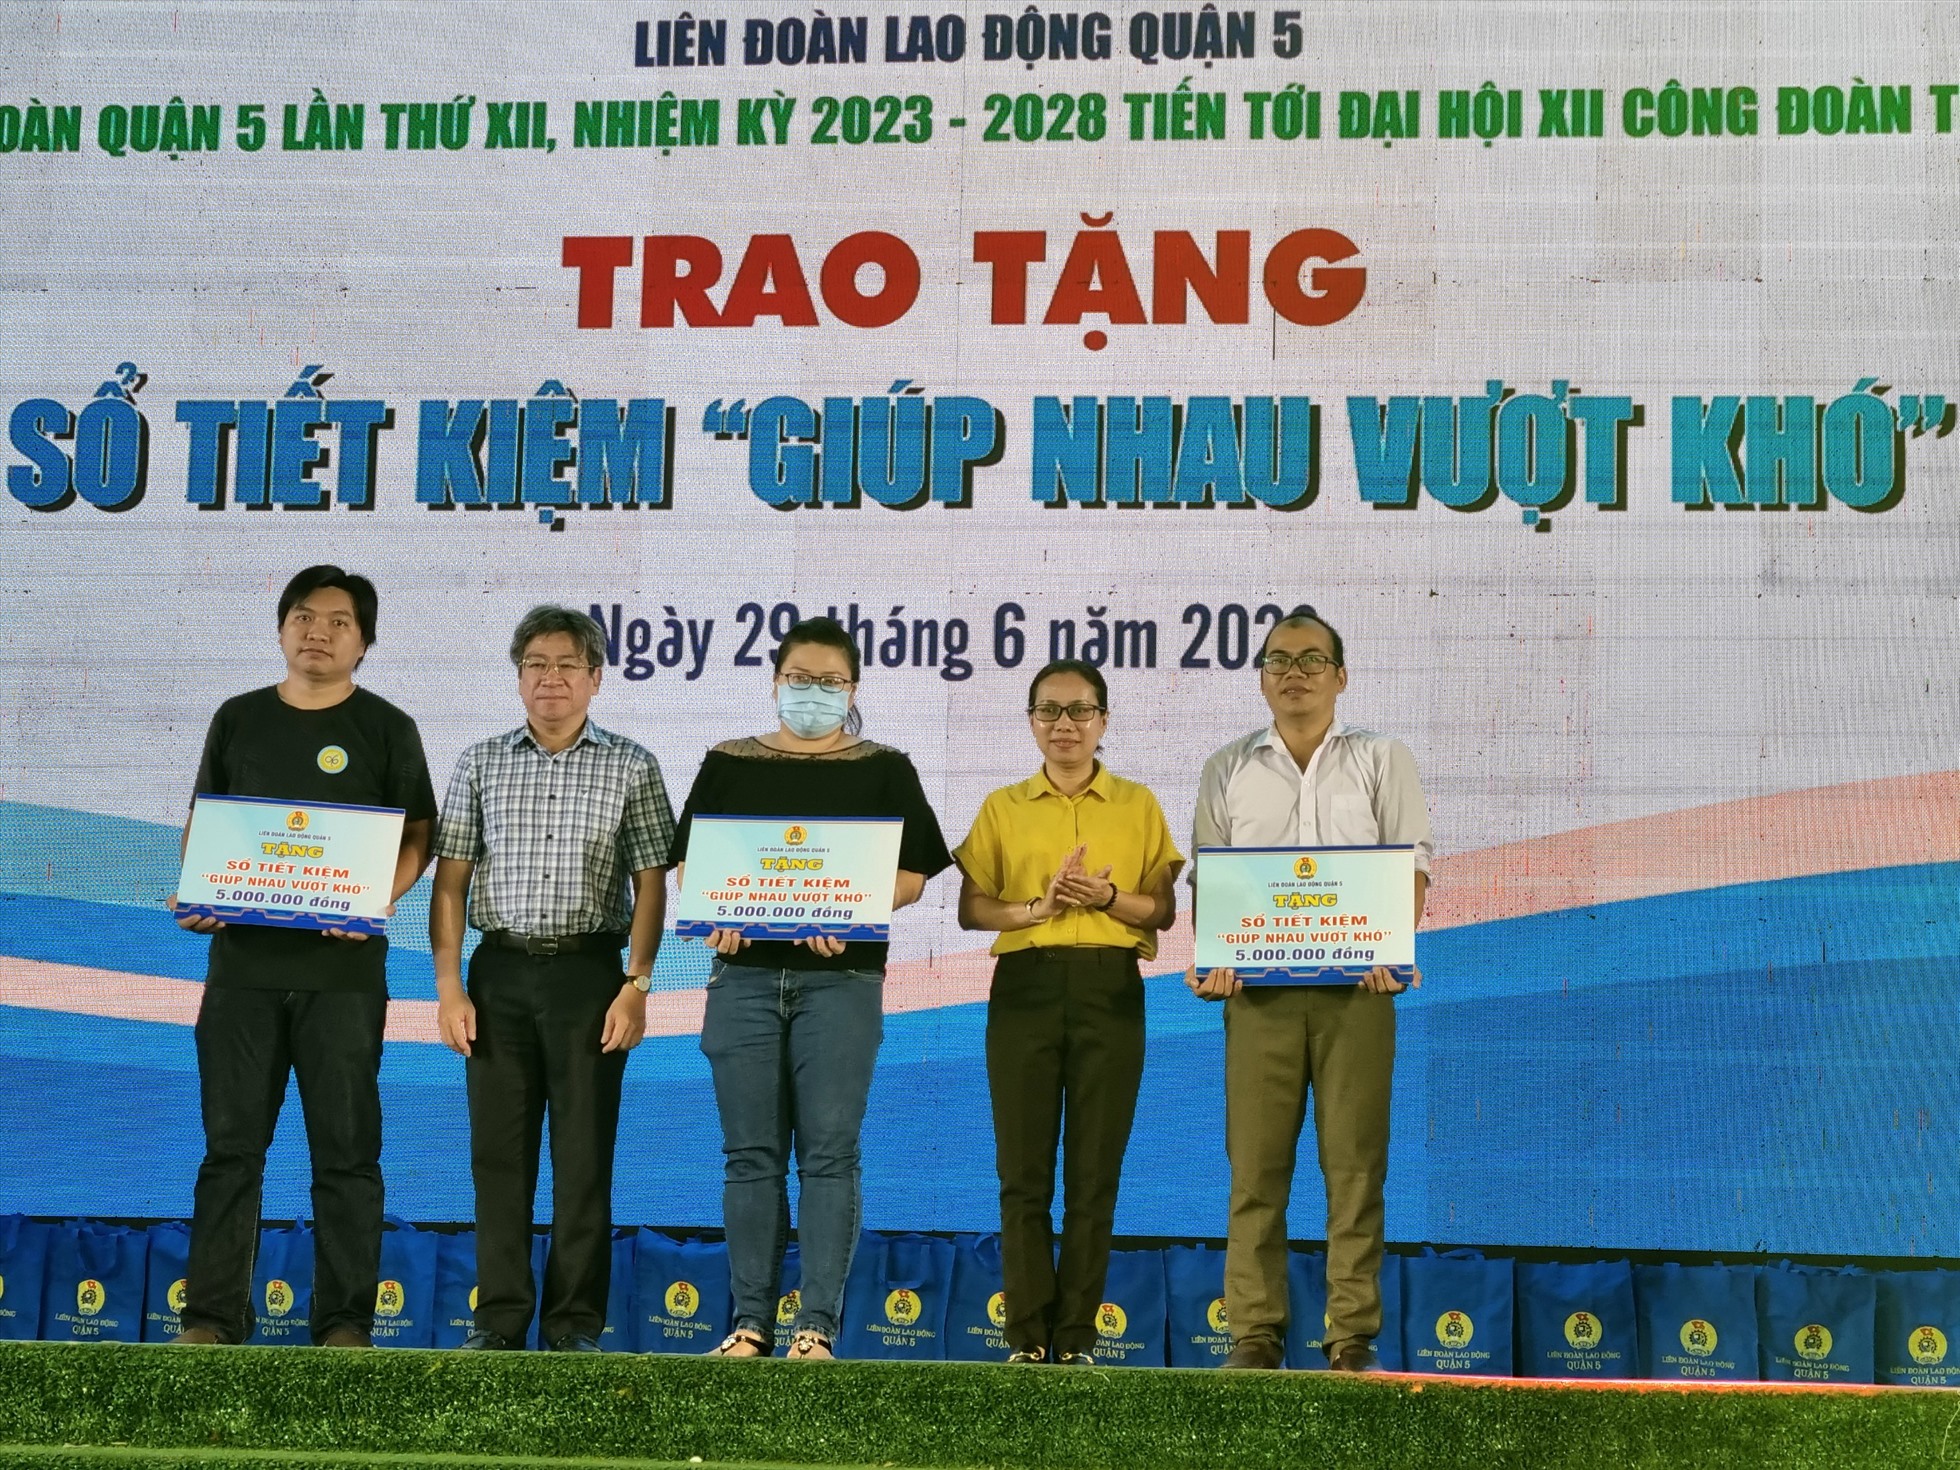 Đại diện LĐLĐ TP Hồ Chí Minh và UBND quận 5 trao tặng sổ tiết kiệm “Giúp nhau vượt khó” cho các CNLĐ bị bệnh nan y, hiểm nghèo. Ảnh: Nam Dương